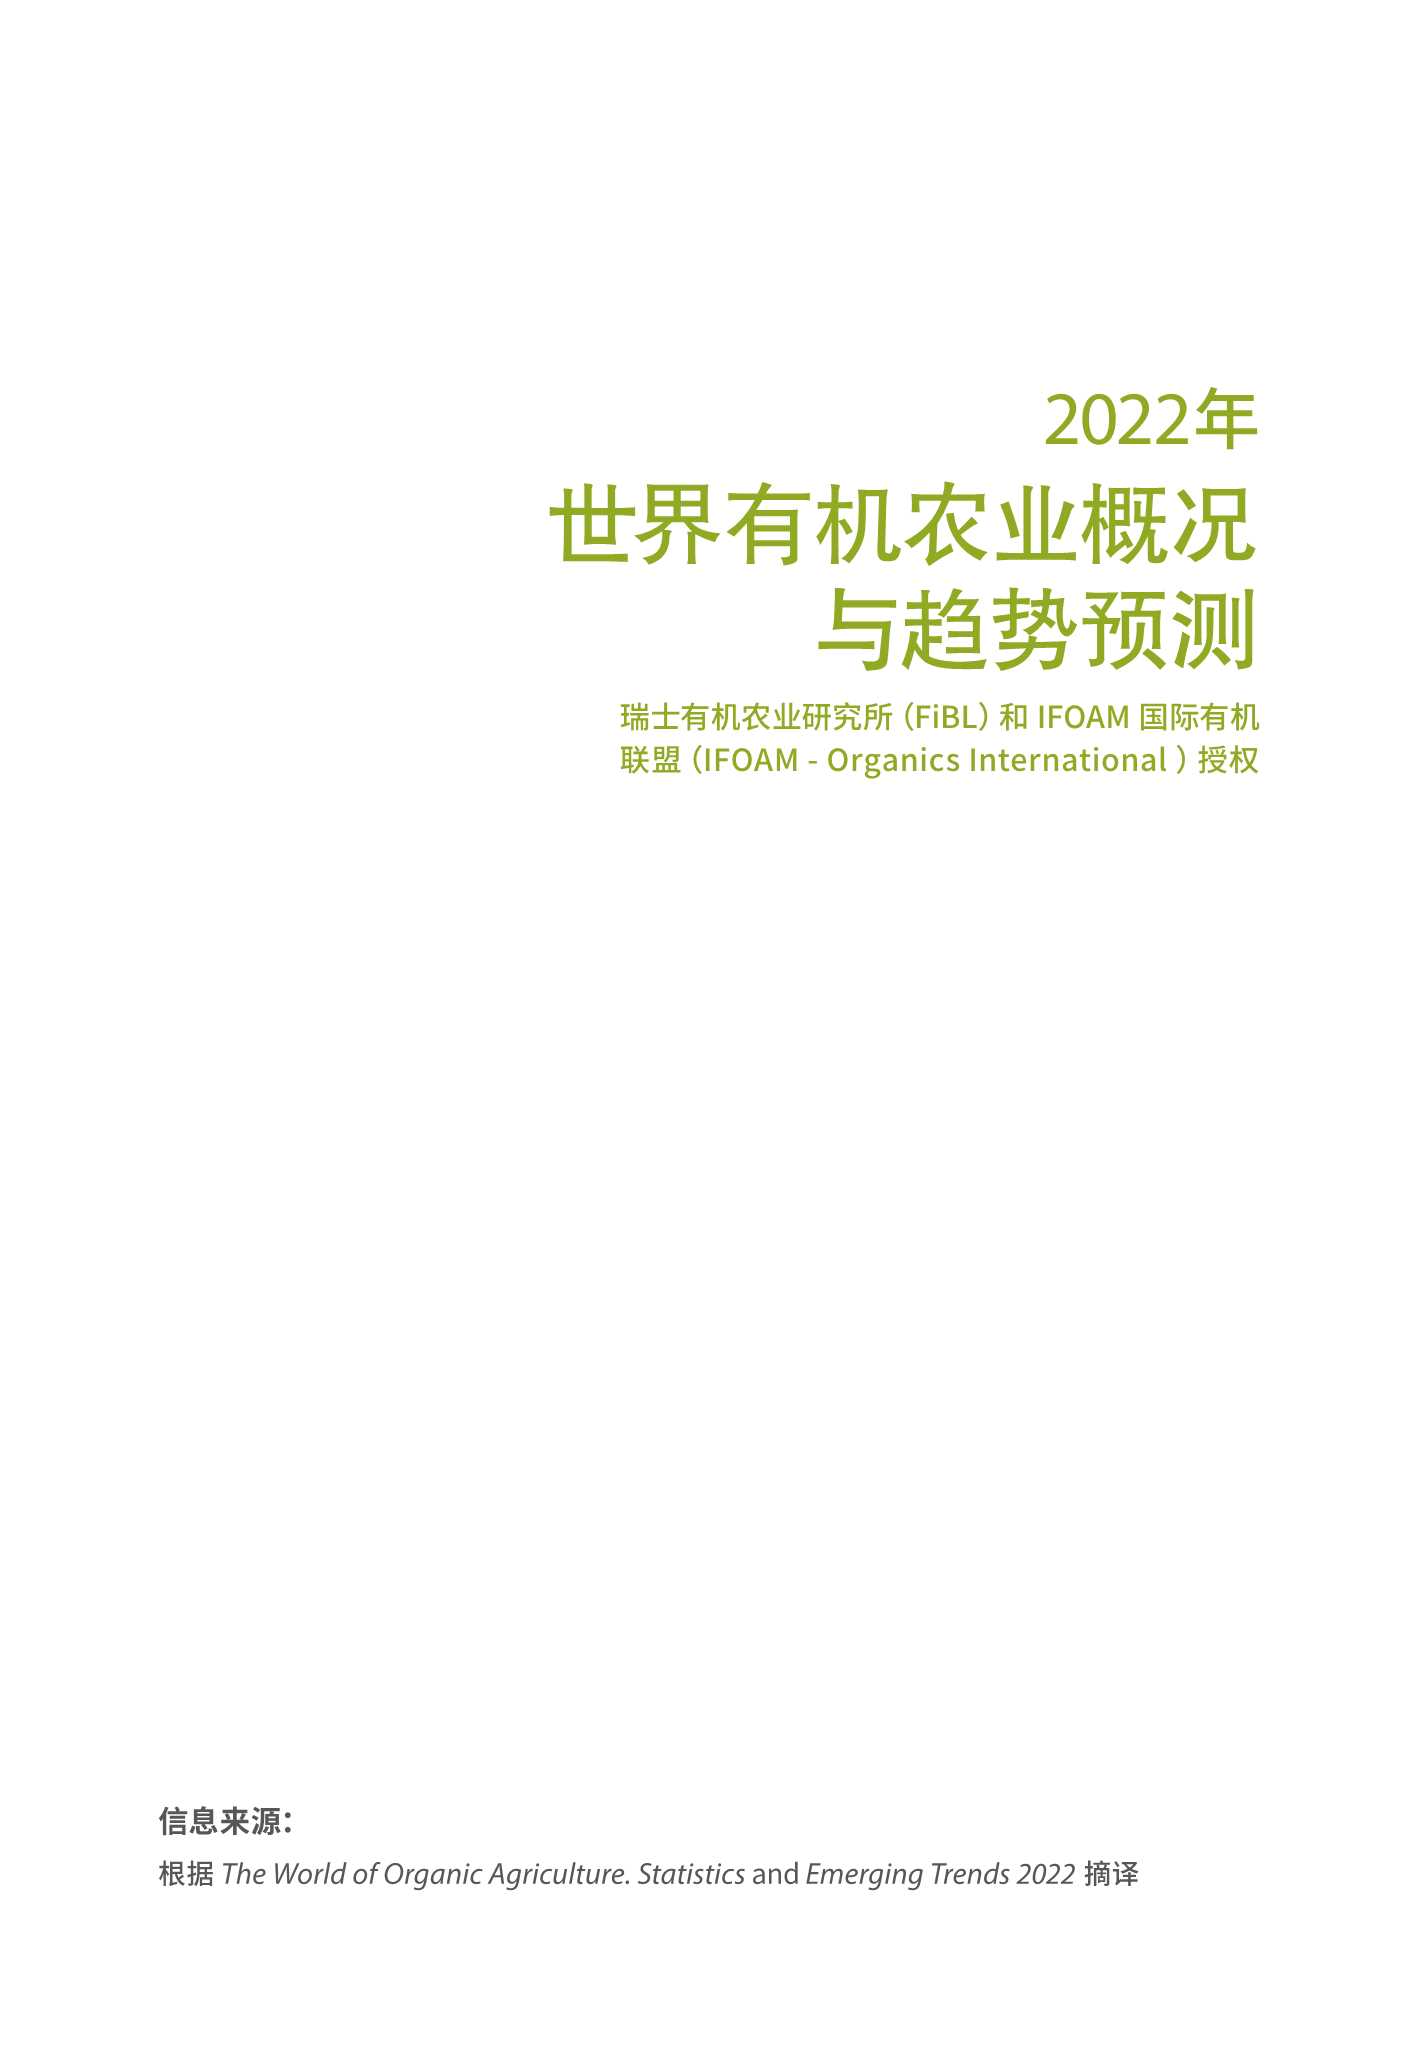 2022年世界有机农业概况与趋势预测预告-2022.04-16页